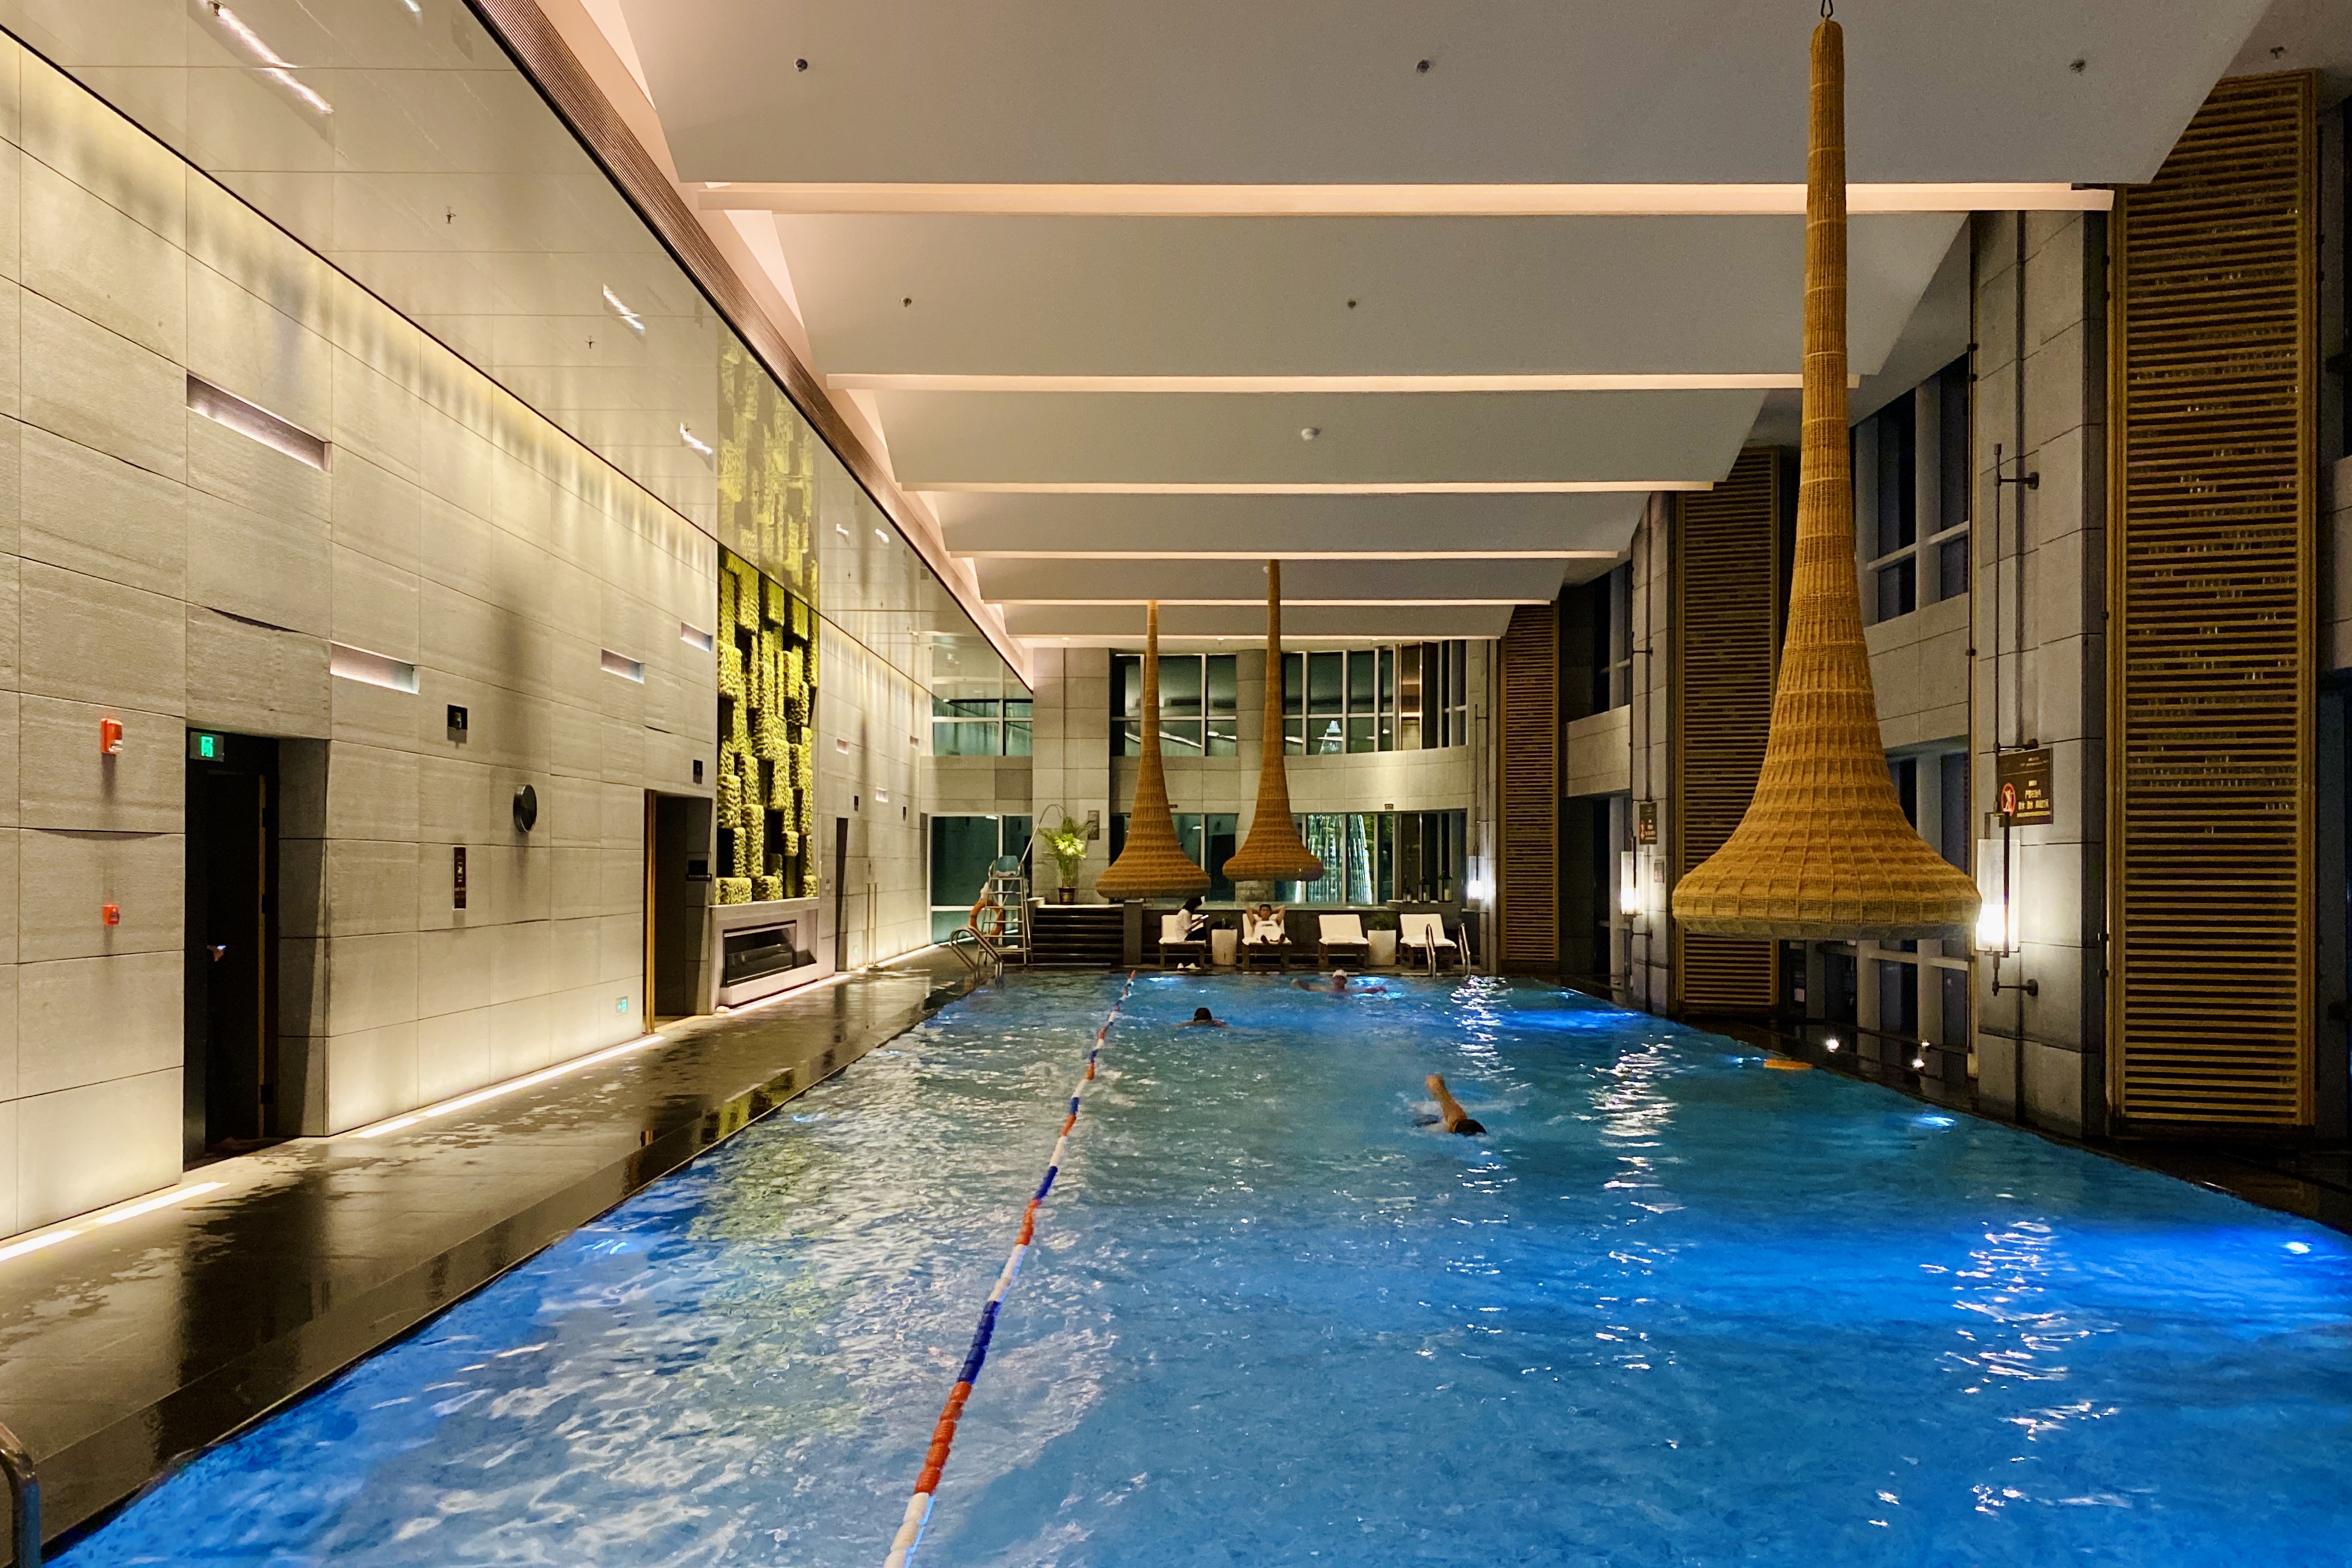 深圳万豪酒店游泳池图片